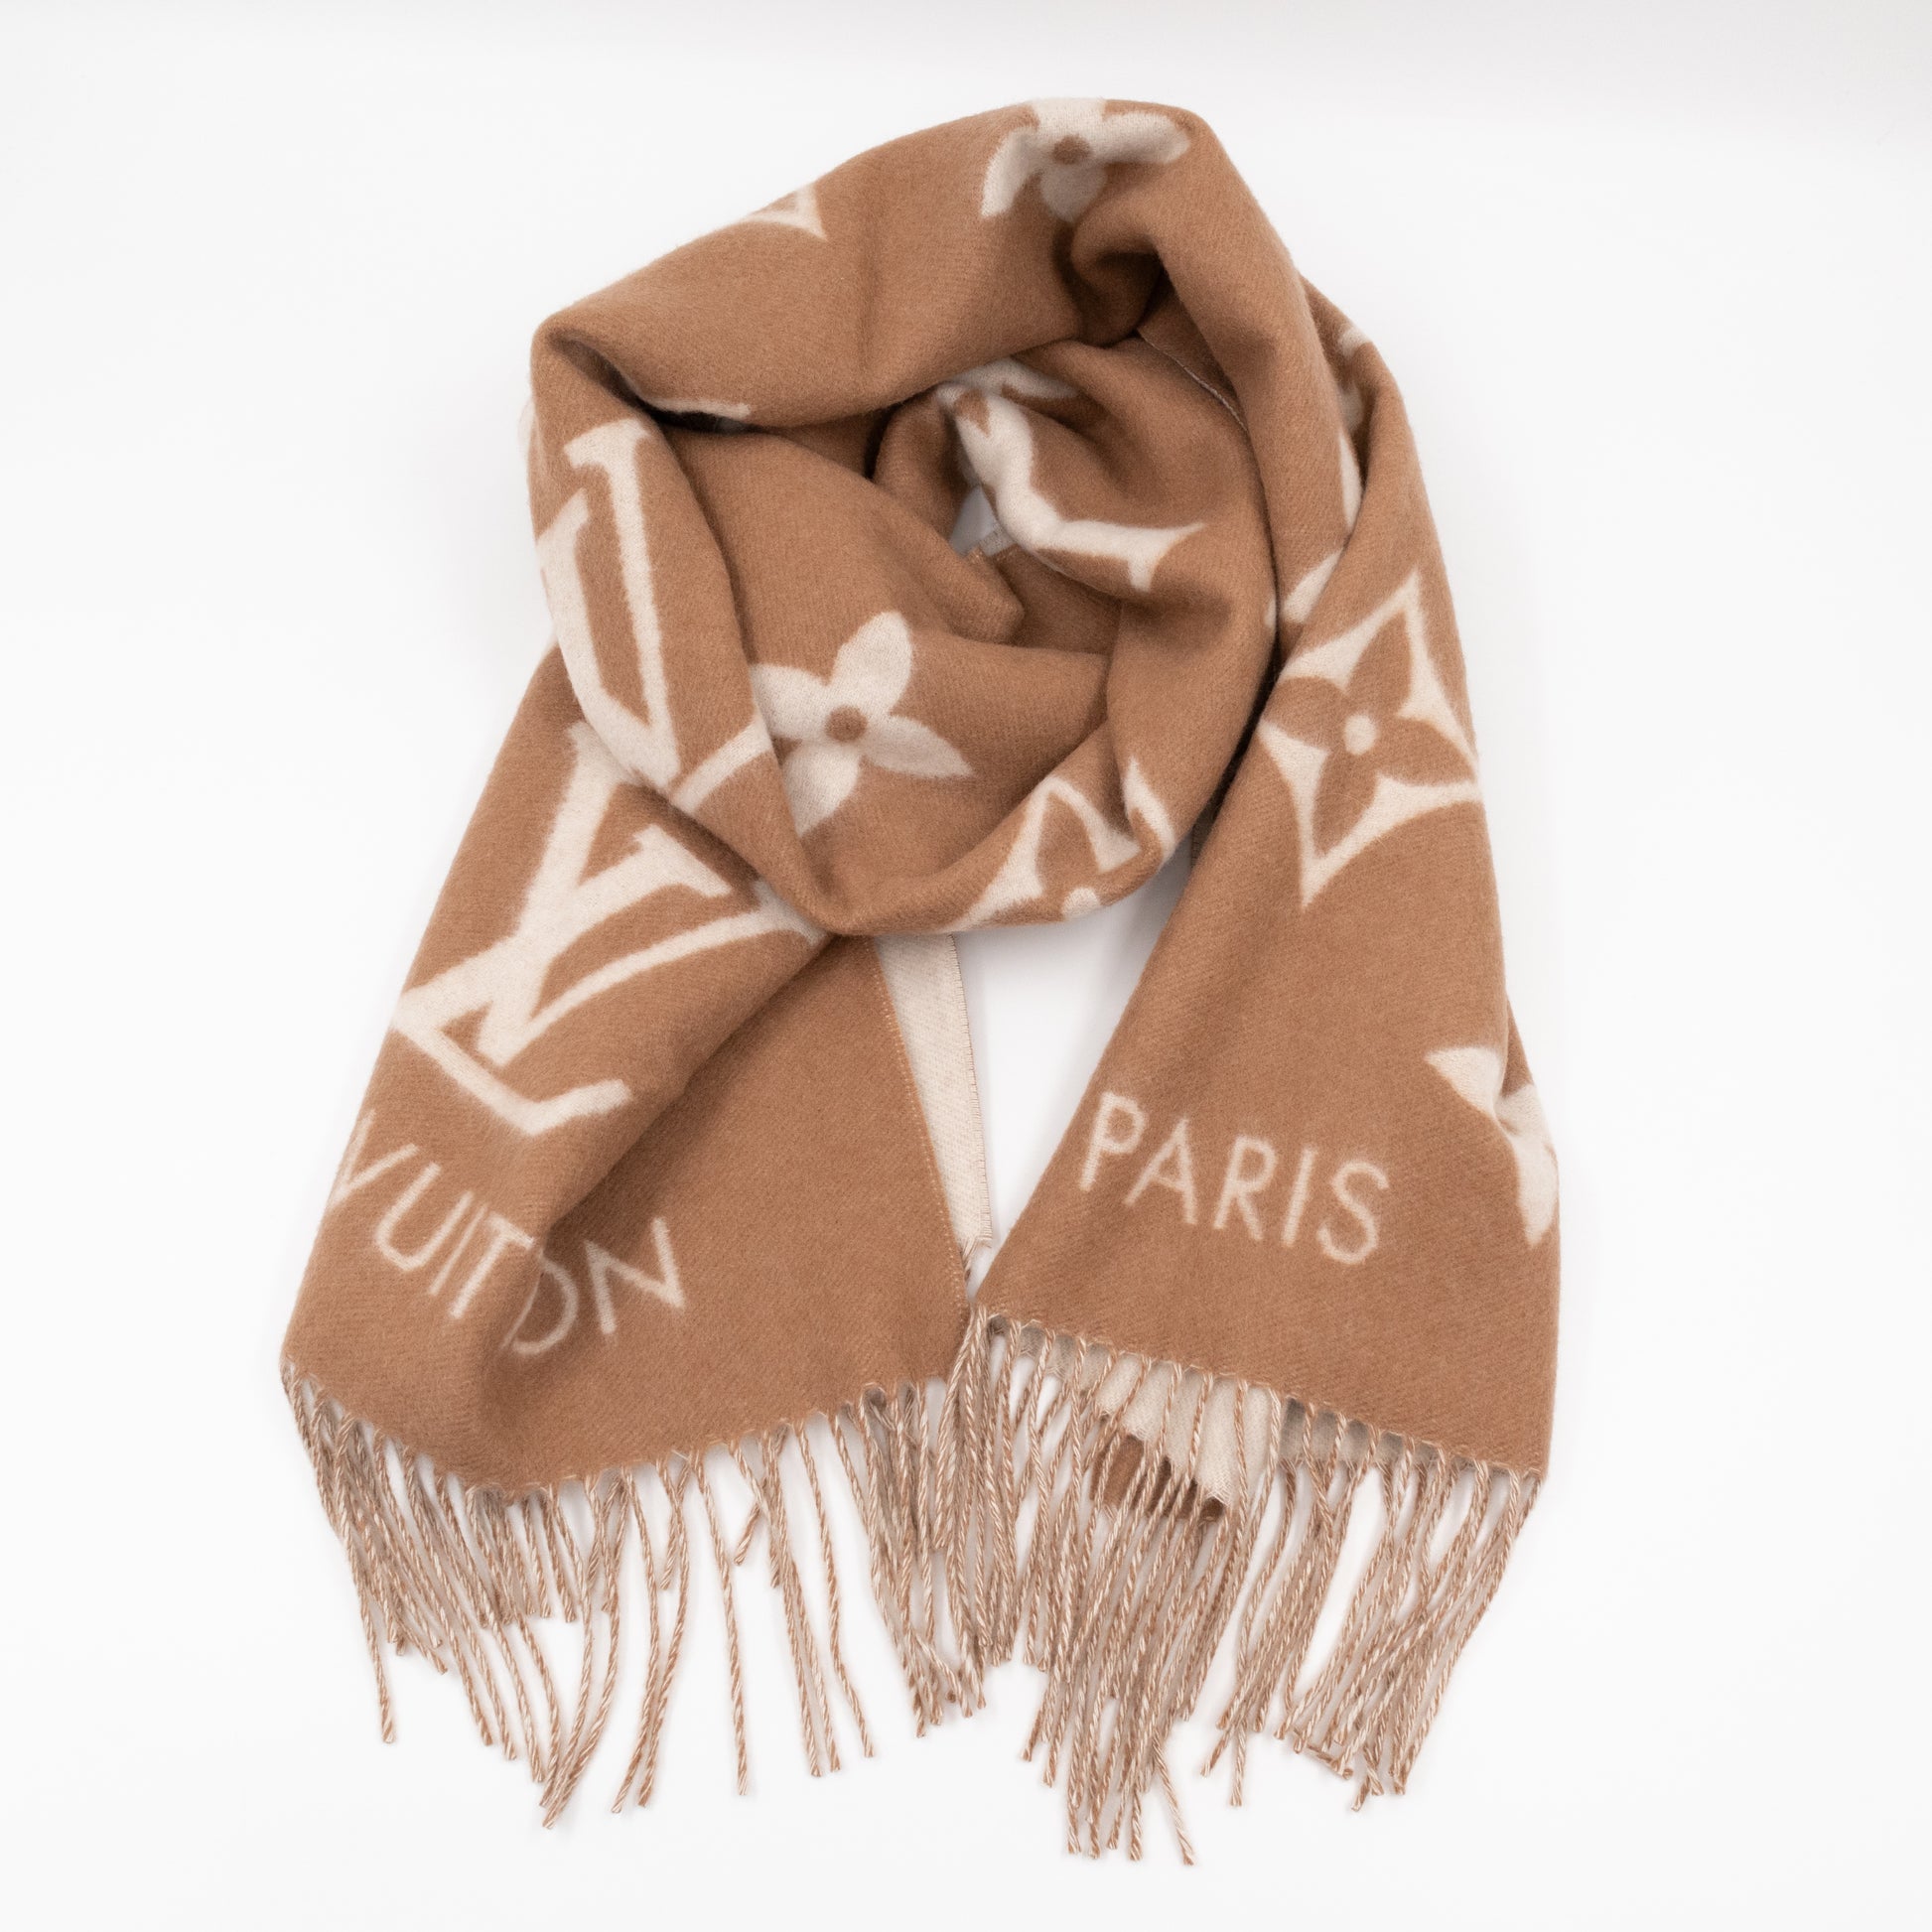 Louis Vuitton cold reykjavik cashmere scarf Beige